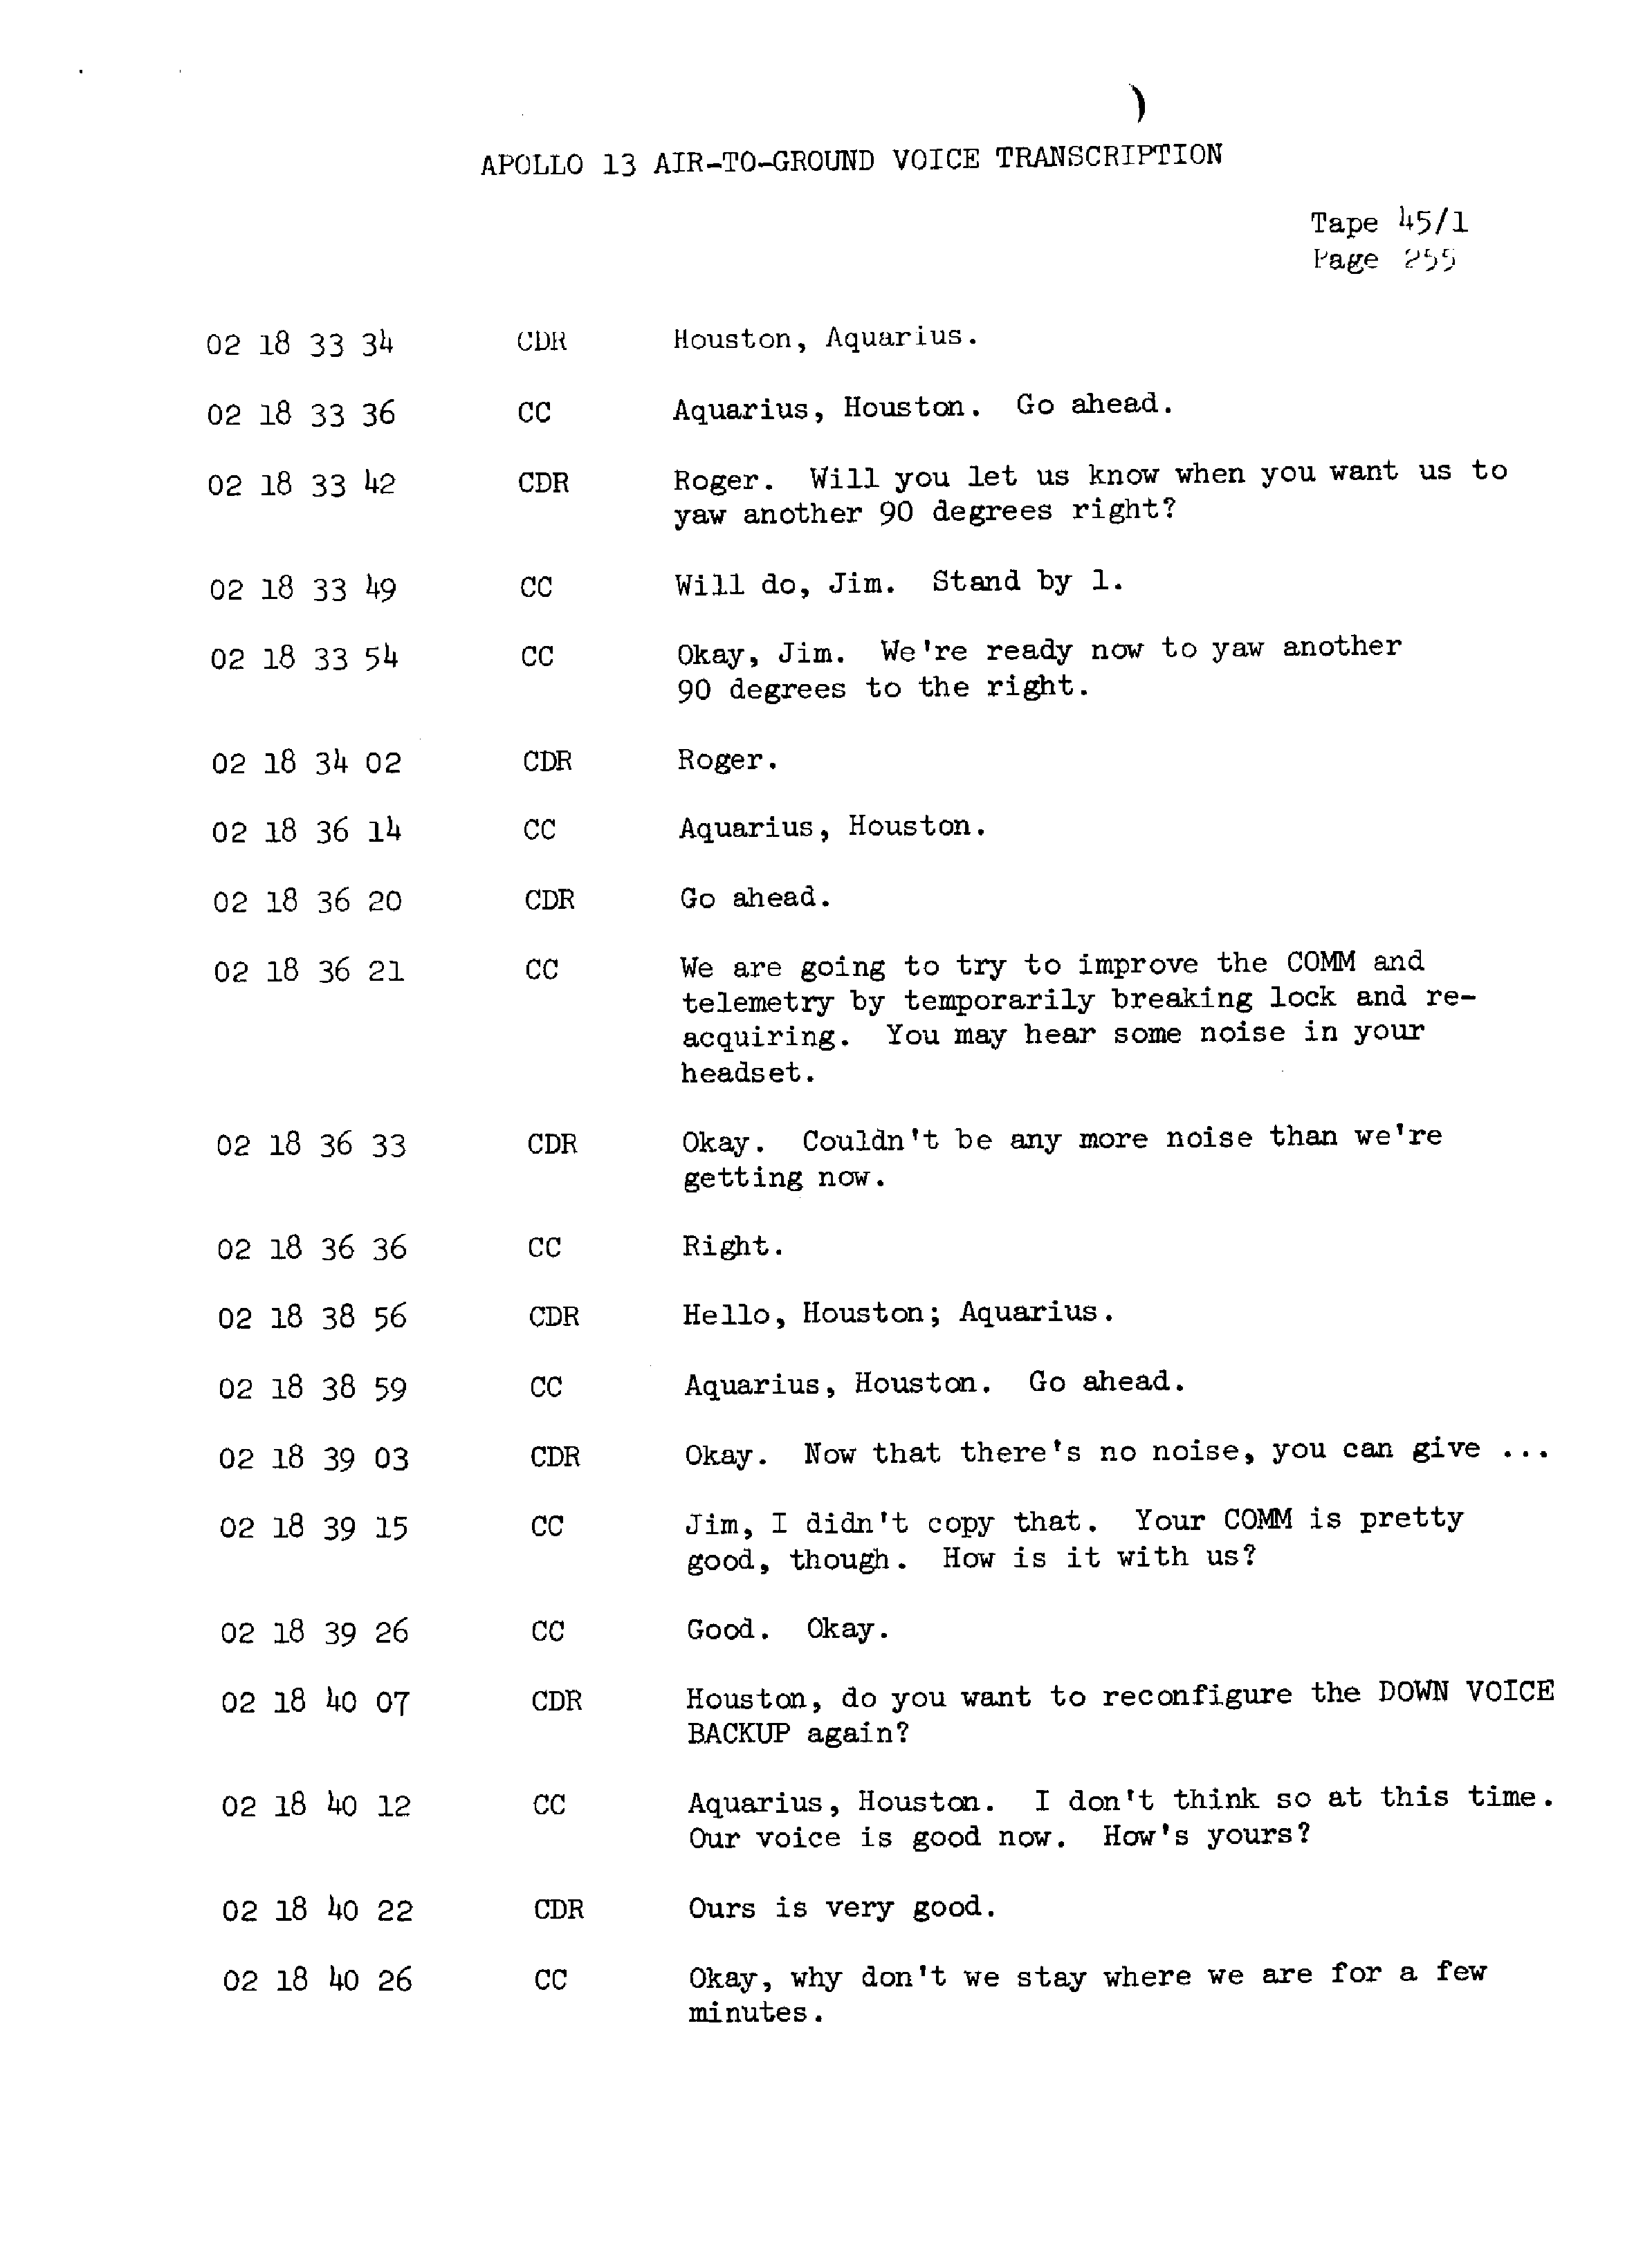 Page 262 of Apollo 13’s original transcript